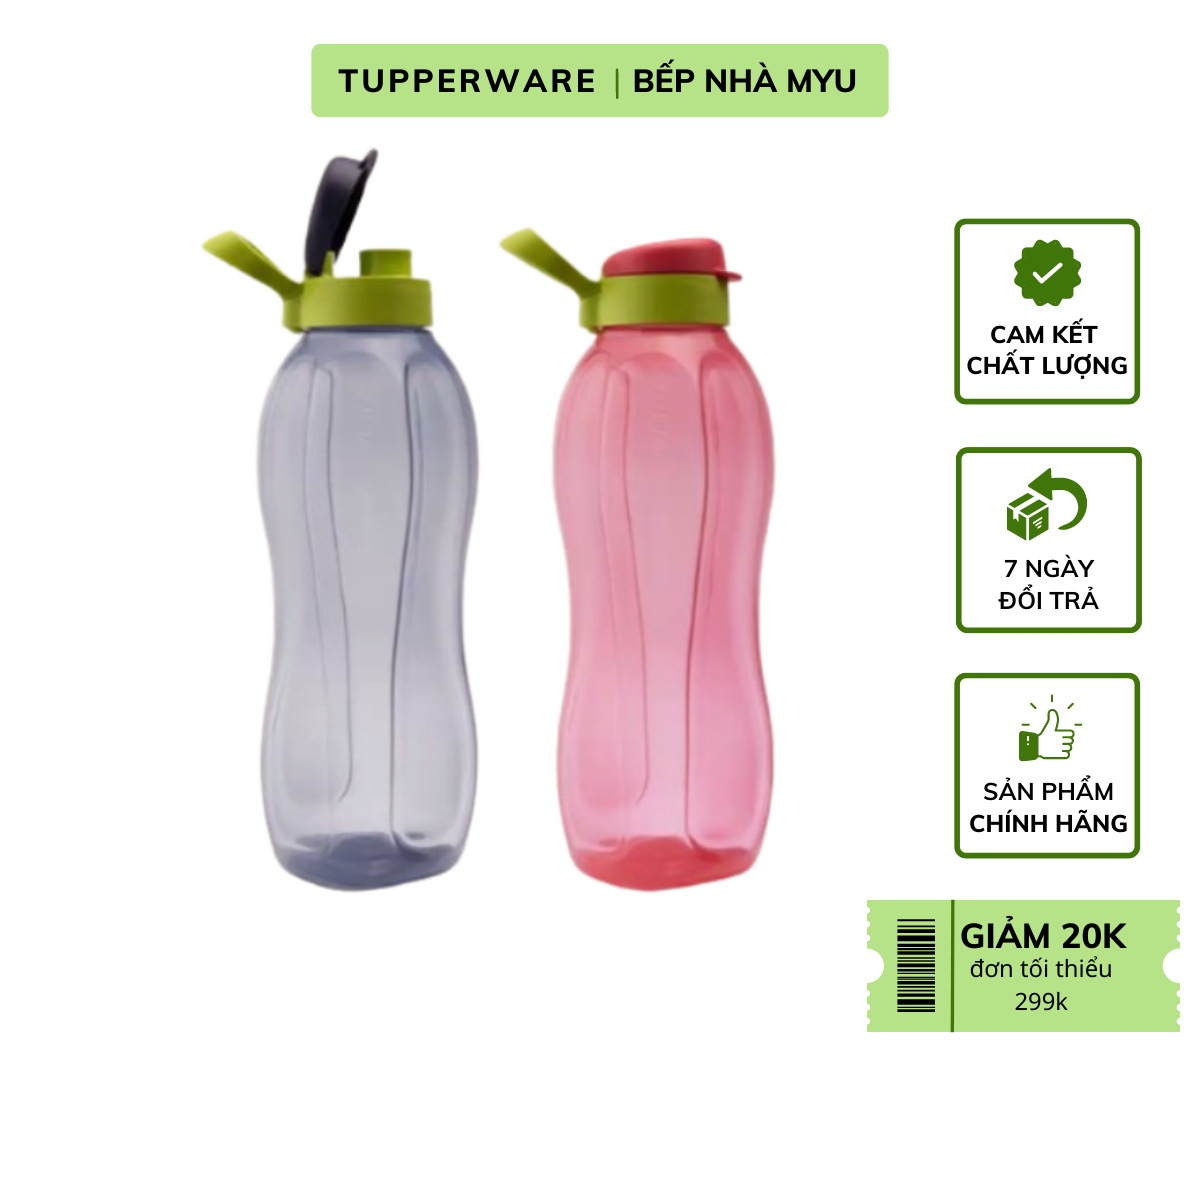 Bình Nước Tupperware Eco Bottle 1.5L - Hàng Chính Hãng